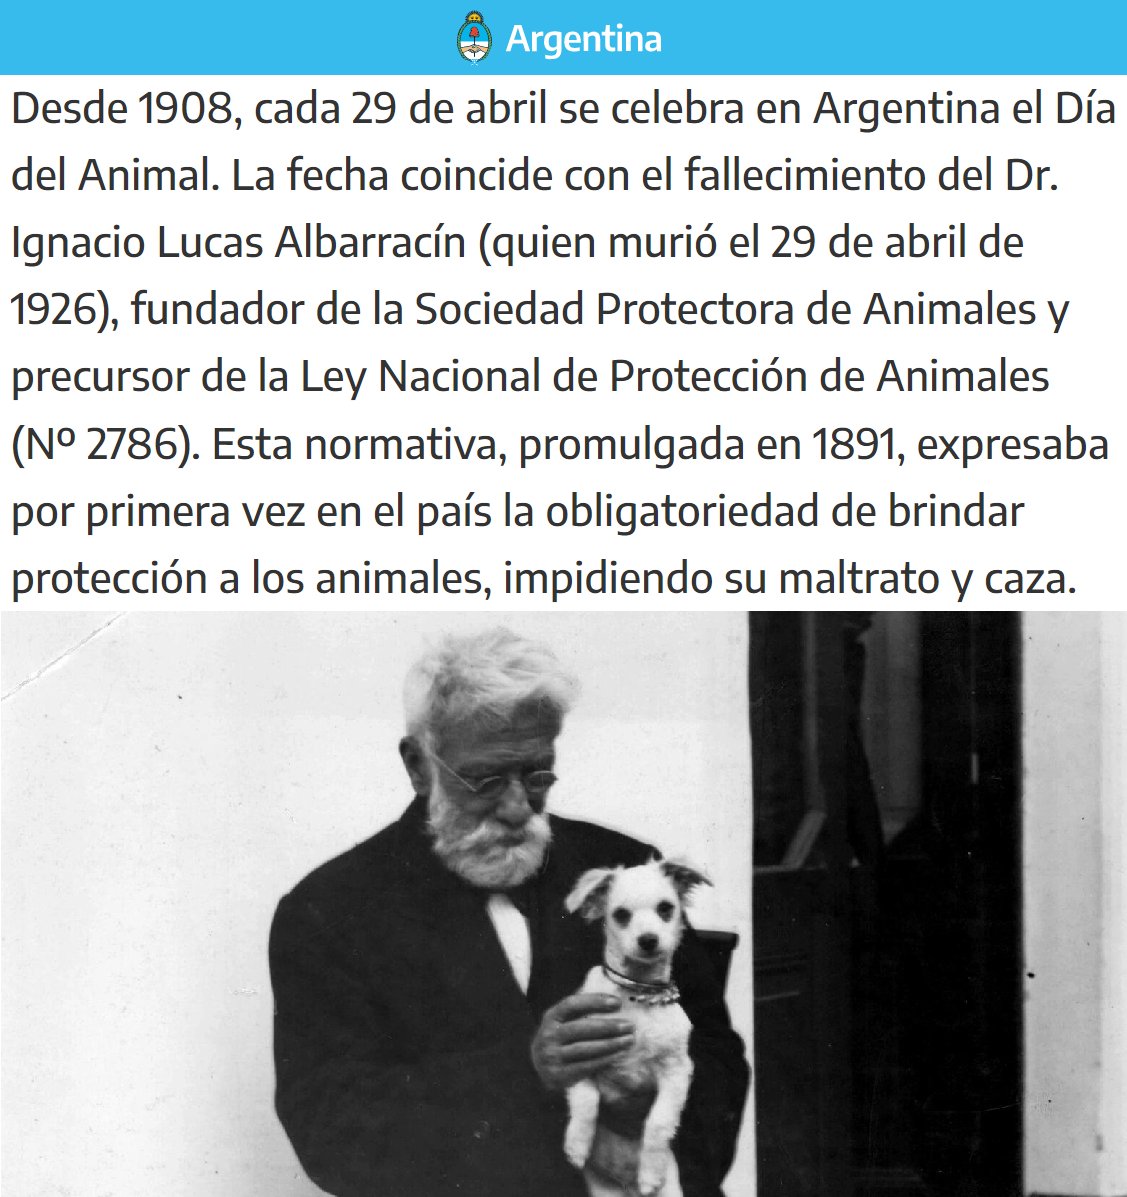 #DiaDelAnimal:
Porque se celebra hoy en homenaje a Ignacio Lucas Albarracín